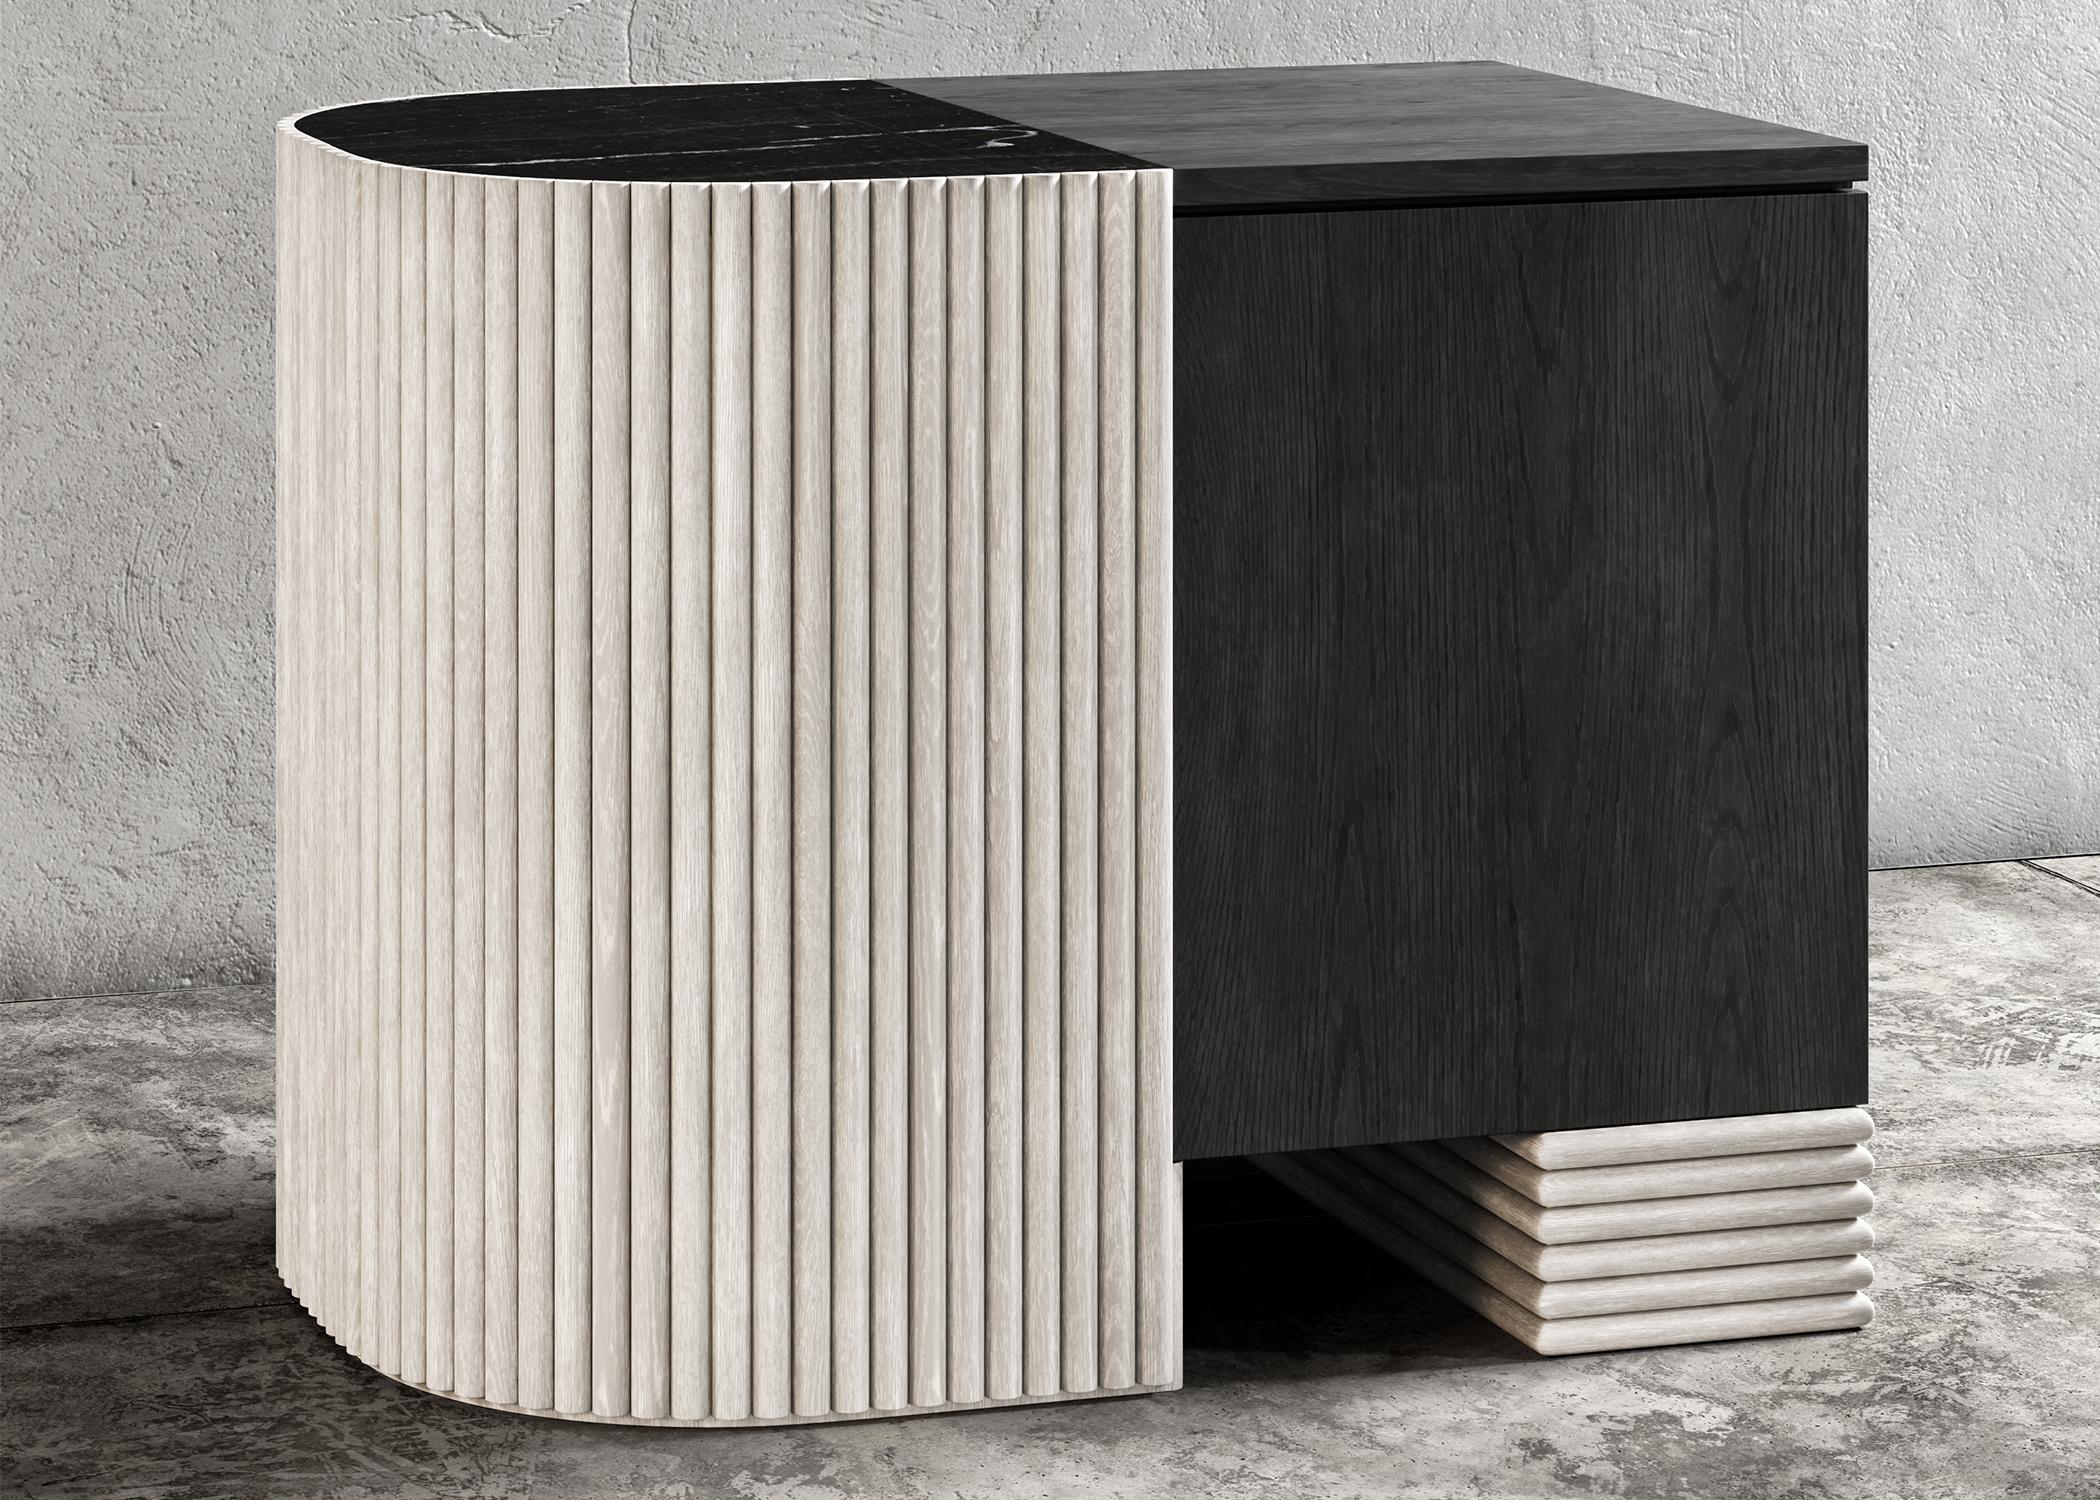 TABLE DE NUIT SWAY - Design Modern avec chêne sable et ébène + marbre Nero Marquina

La table de nuit Sway est un meuble magnifique et moderne qui rehaussera le style de toute chambre à coucher. Fabriquée à partir de bois de haute qualité, le chêne